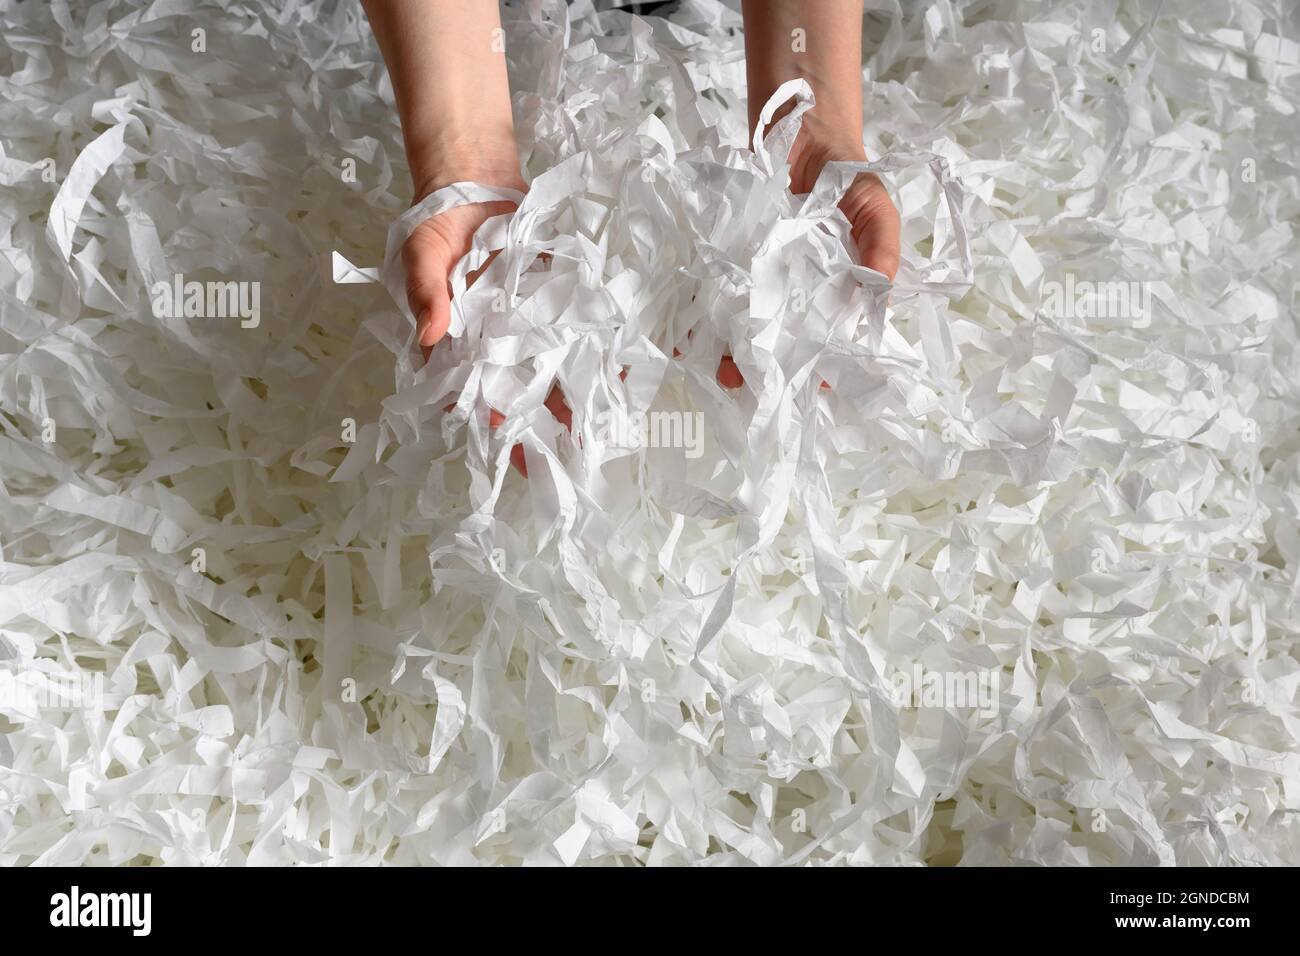 Recycling, Abfall, Müll und Ökologie Konzept. Geschredderter Papierhaufen in den Händen, Draufsicht auf viele weiße Streifen. Stapel geschnittenes Papier wie Konfetti für Party oder b Stockfoto